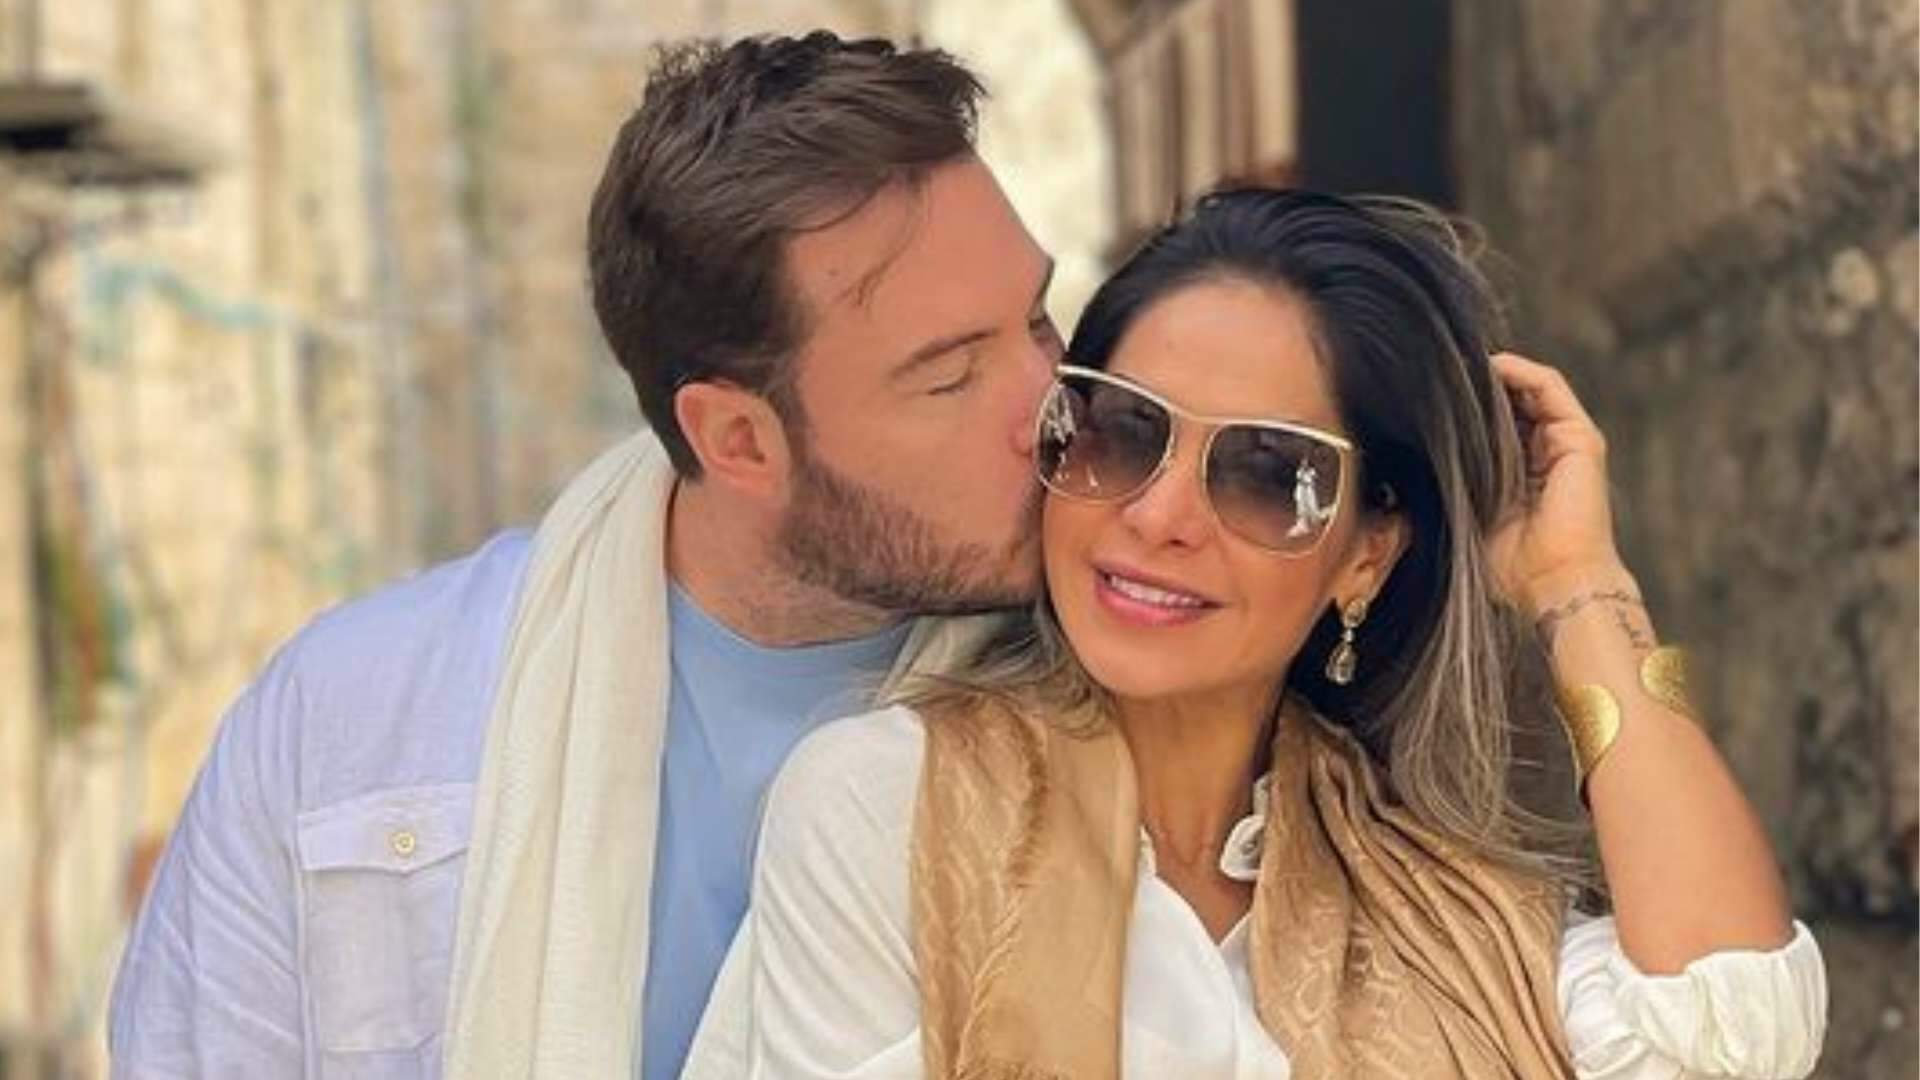 Enrolou a ex? Maira Cardi defende Thiago Nigro e se irrita com críticas ao marido: “Arrastar relacionamentos” - Metropolitana FM